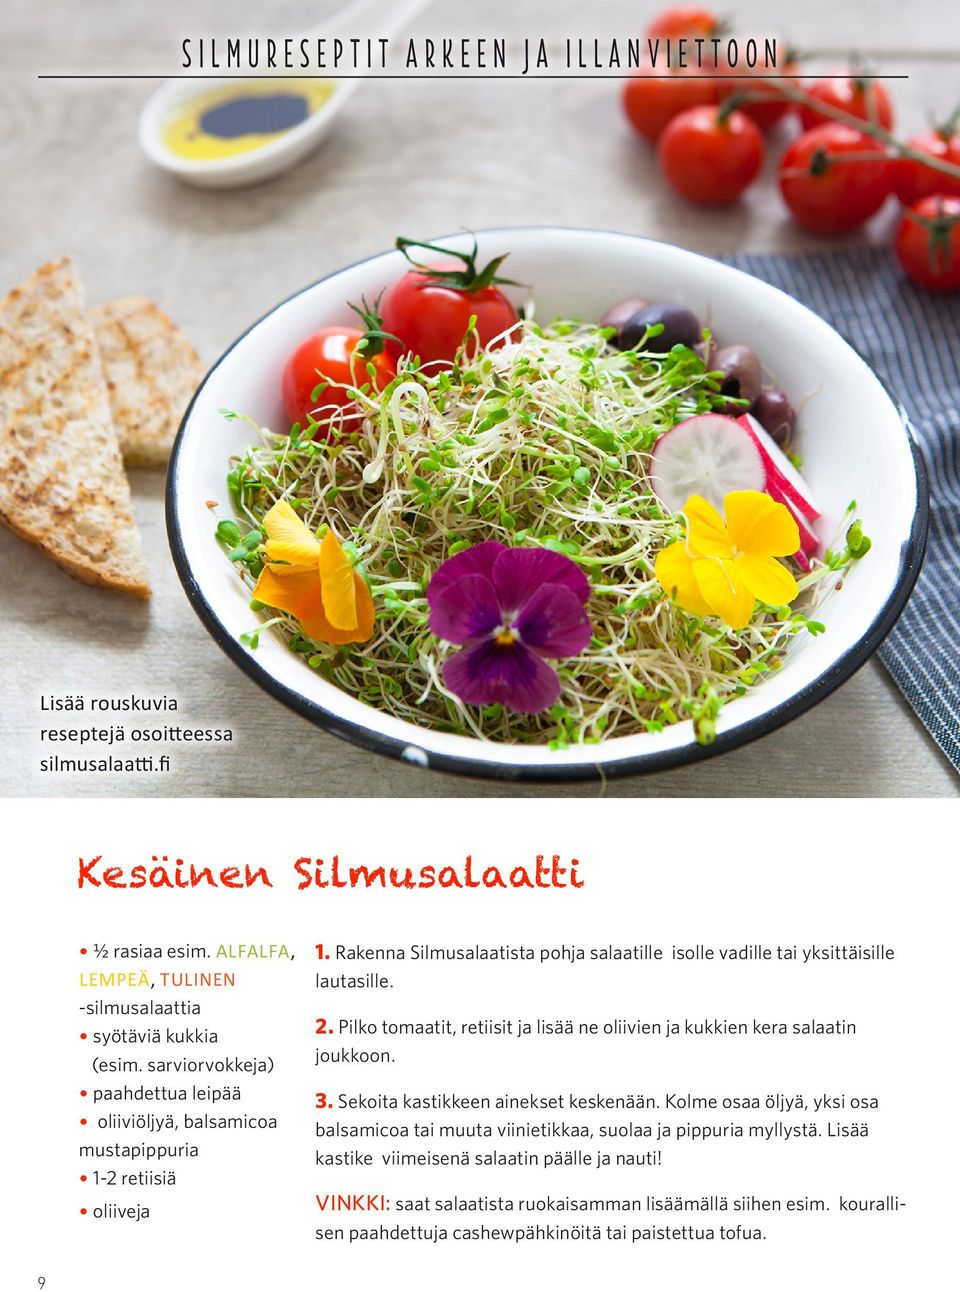 Rakenna Silmusalaatista pohja salaatille isolle vadille tai yksittäisille lautasille. 2. Pilko tomaatit, retiisit ja lisää ne oliivien ja kukkien kera salaatin joukkoon. 3.